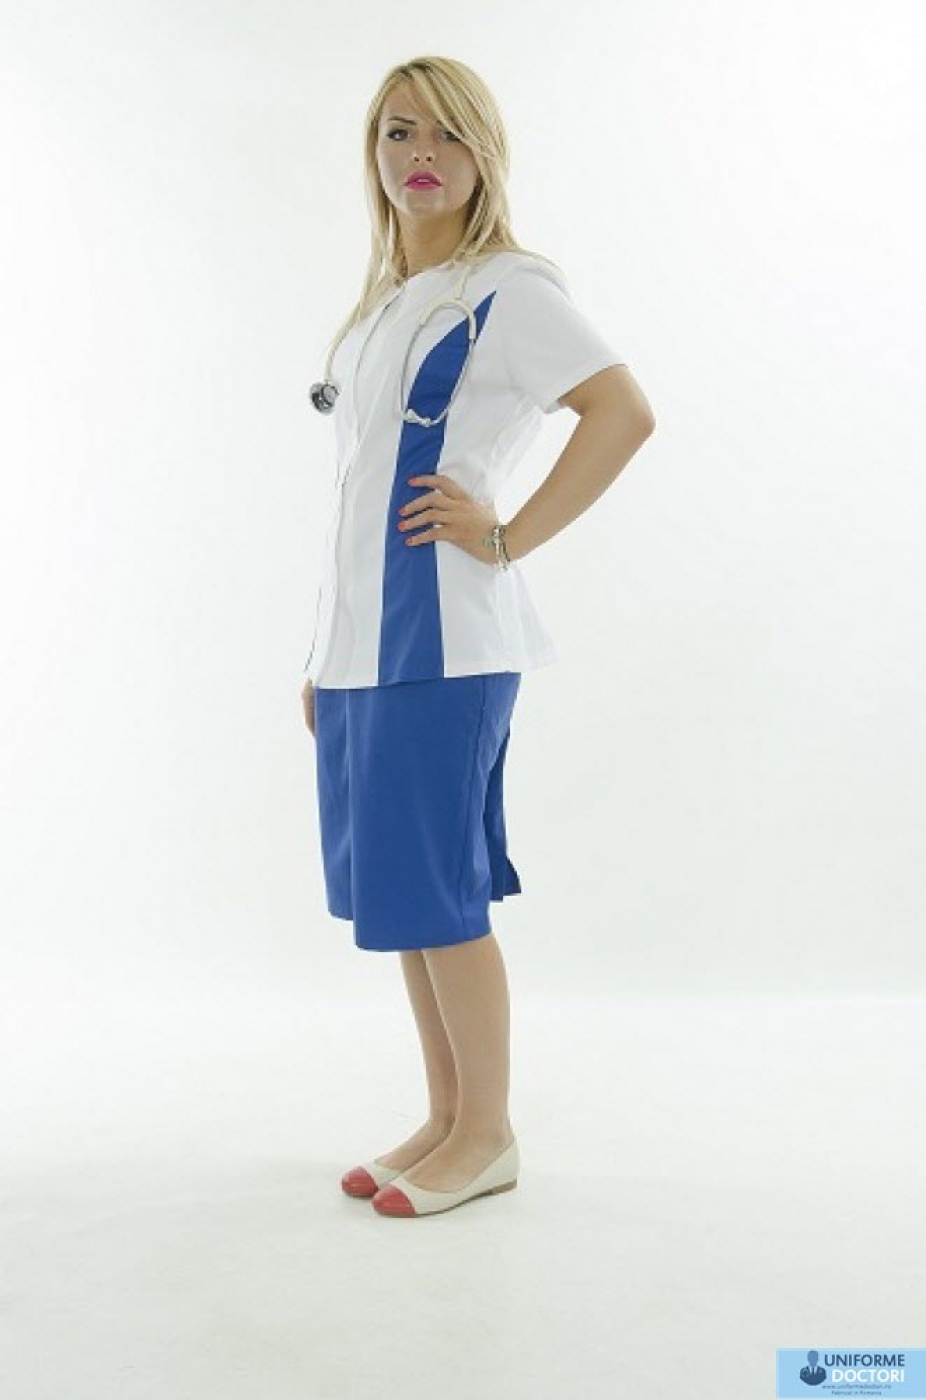 Uniforme medicale – Halat medical cu maneca scurta si fermoar, model bicolor